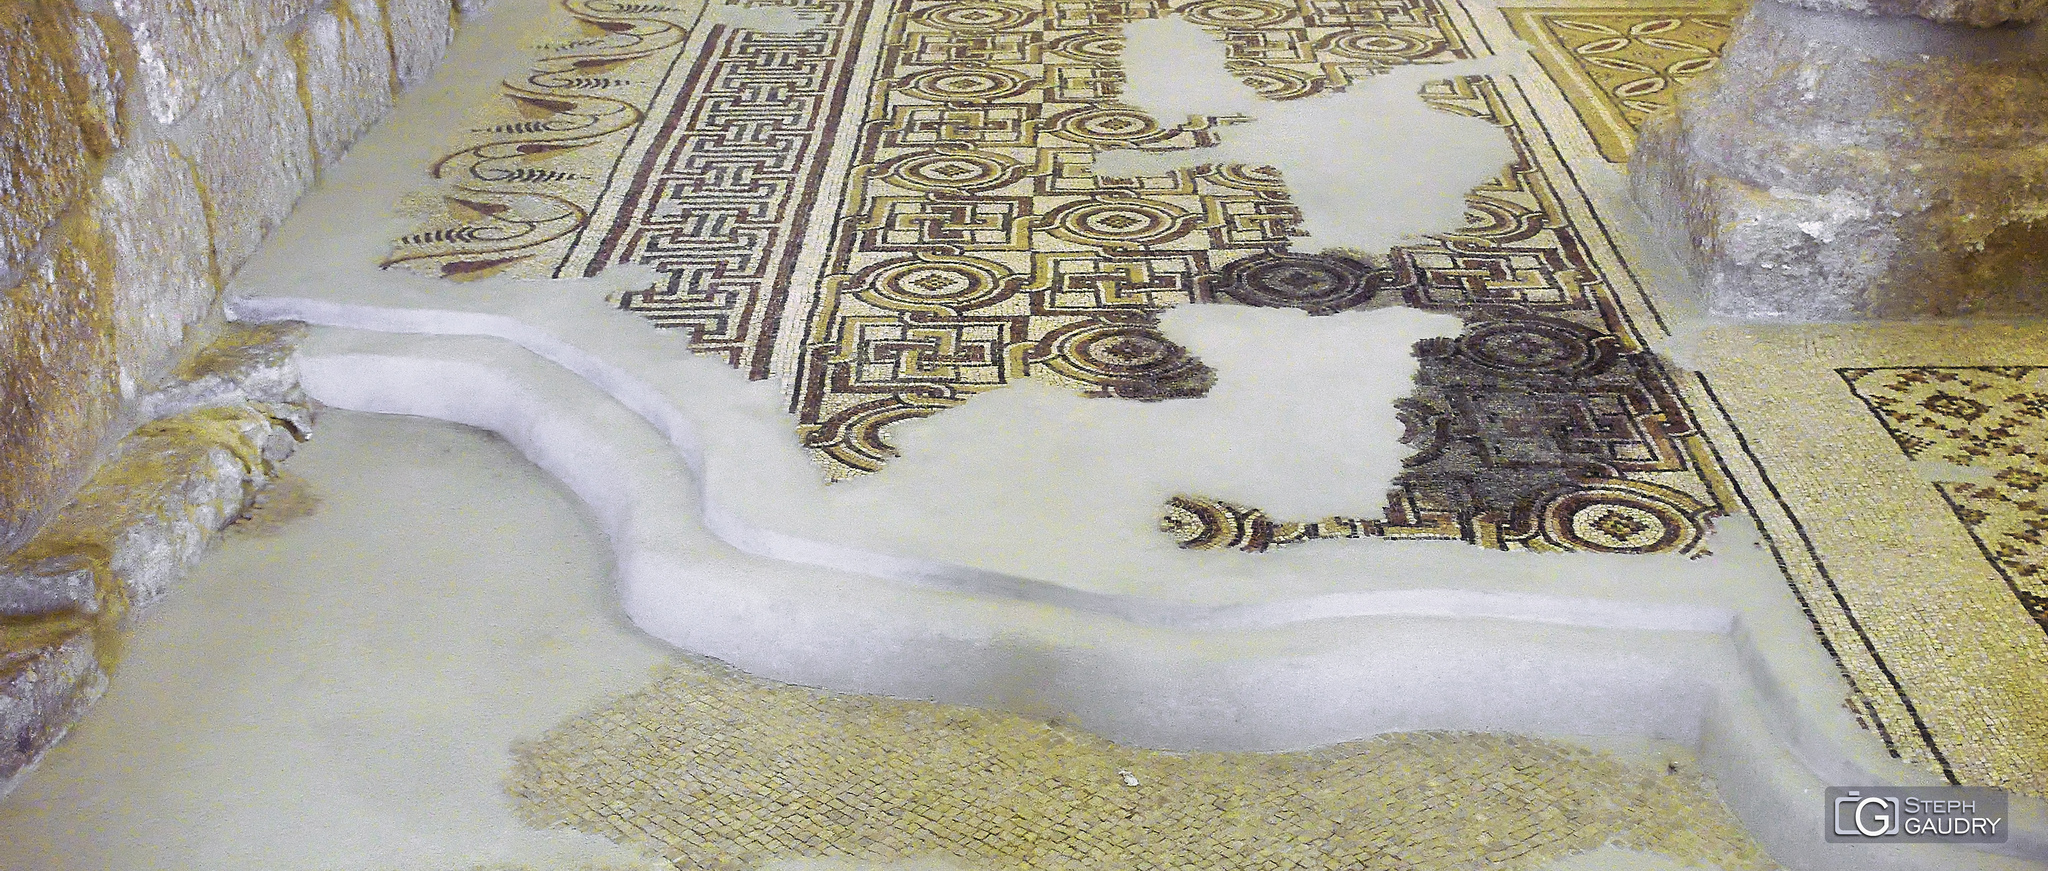 Couches de mosaïques de la basilique du mémorial de Moïse au Mont Nébo [Klicken Sie hier, um die Diashow zu starten]